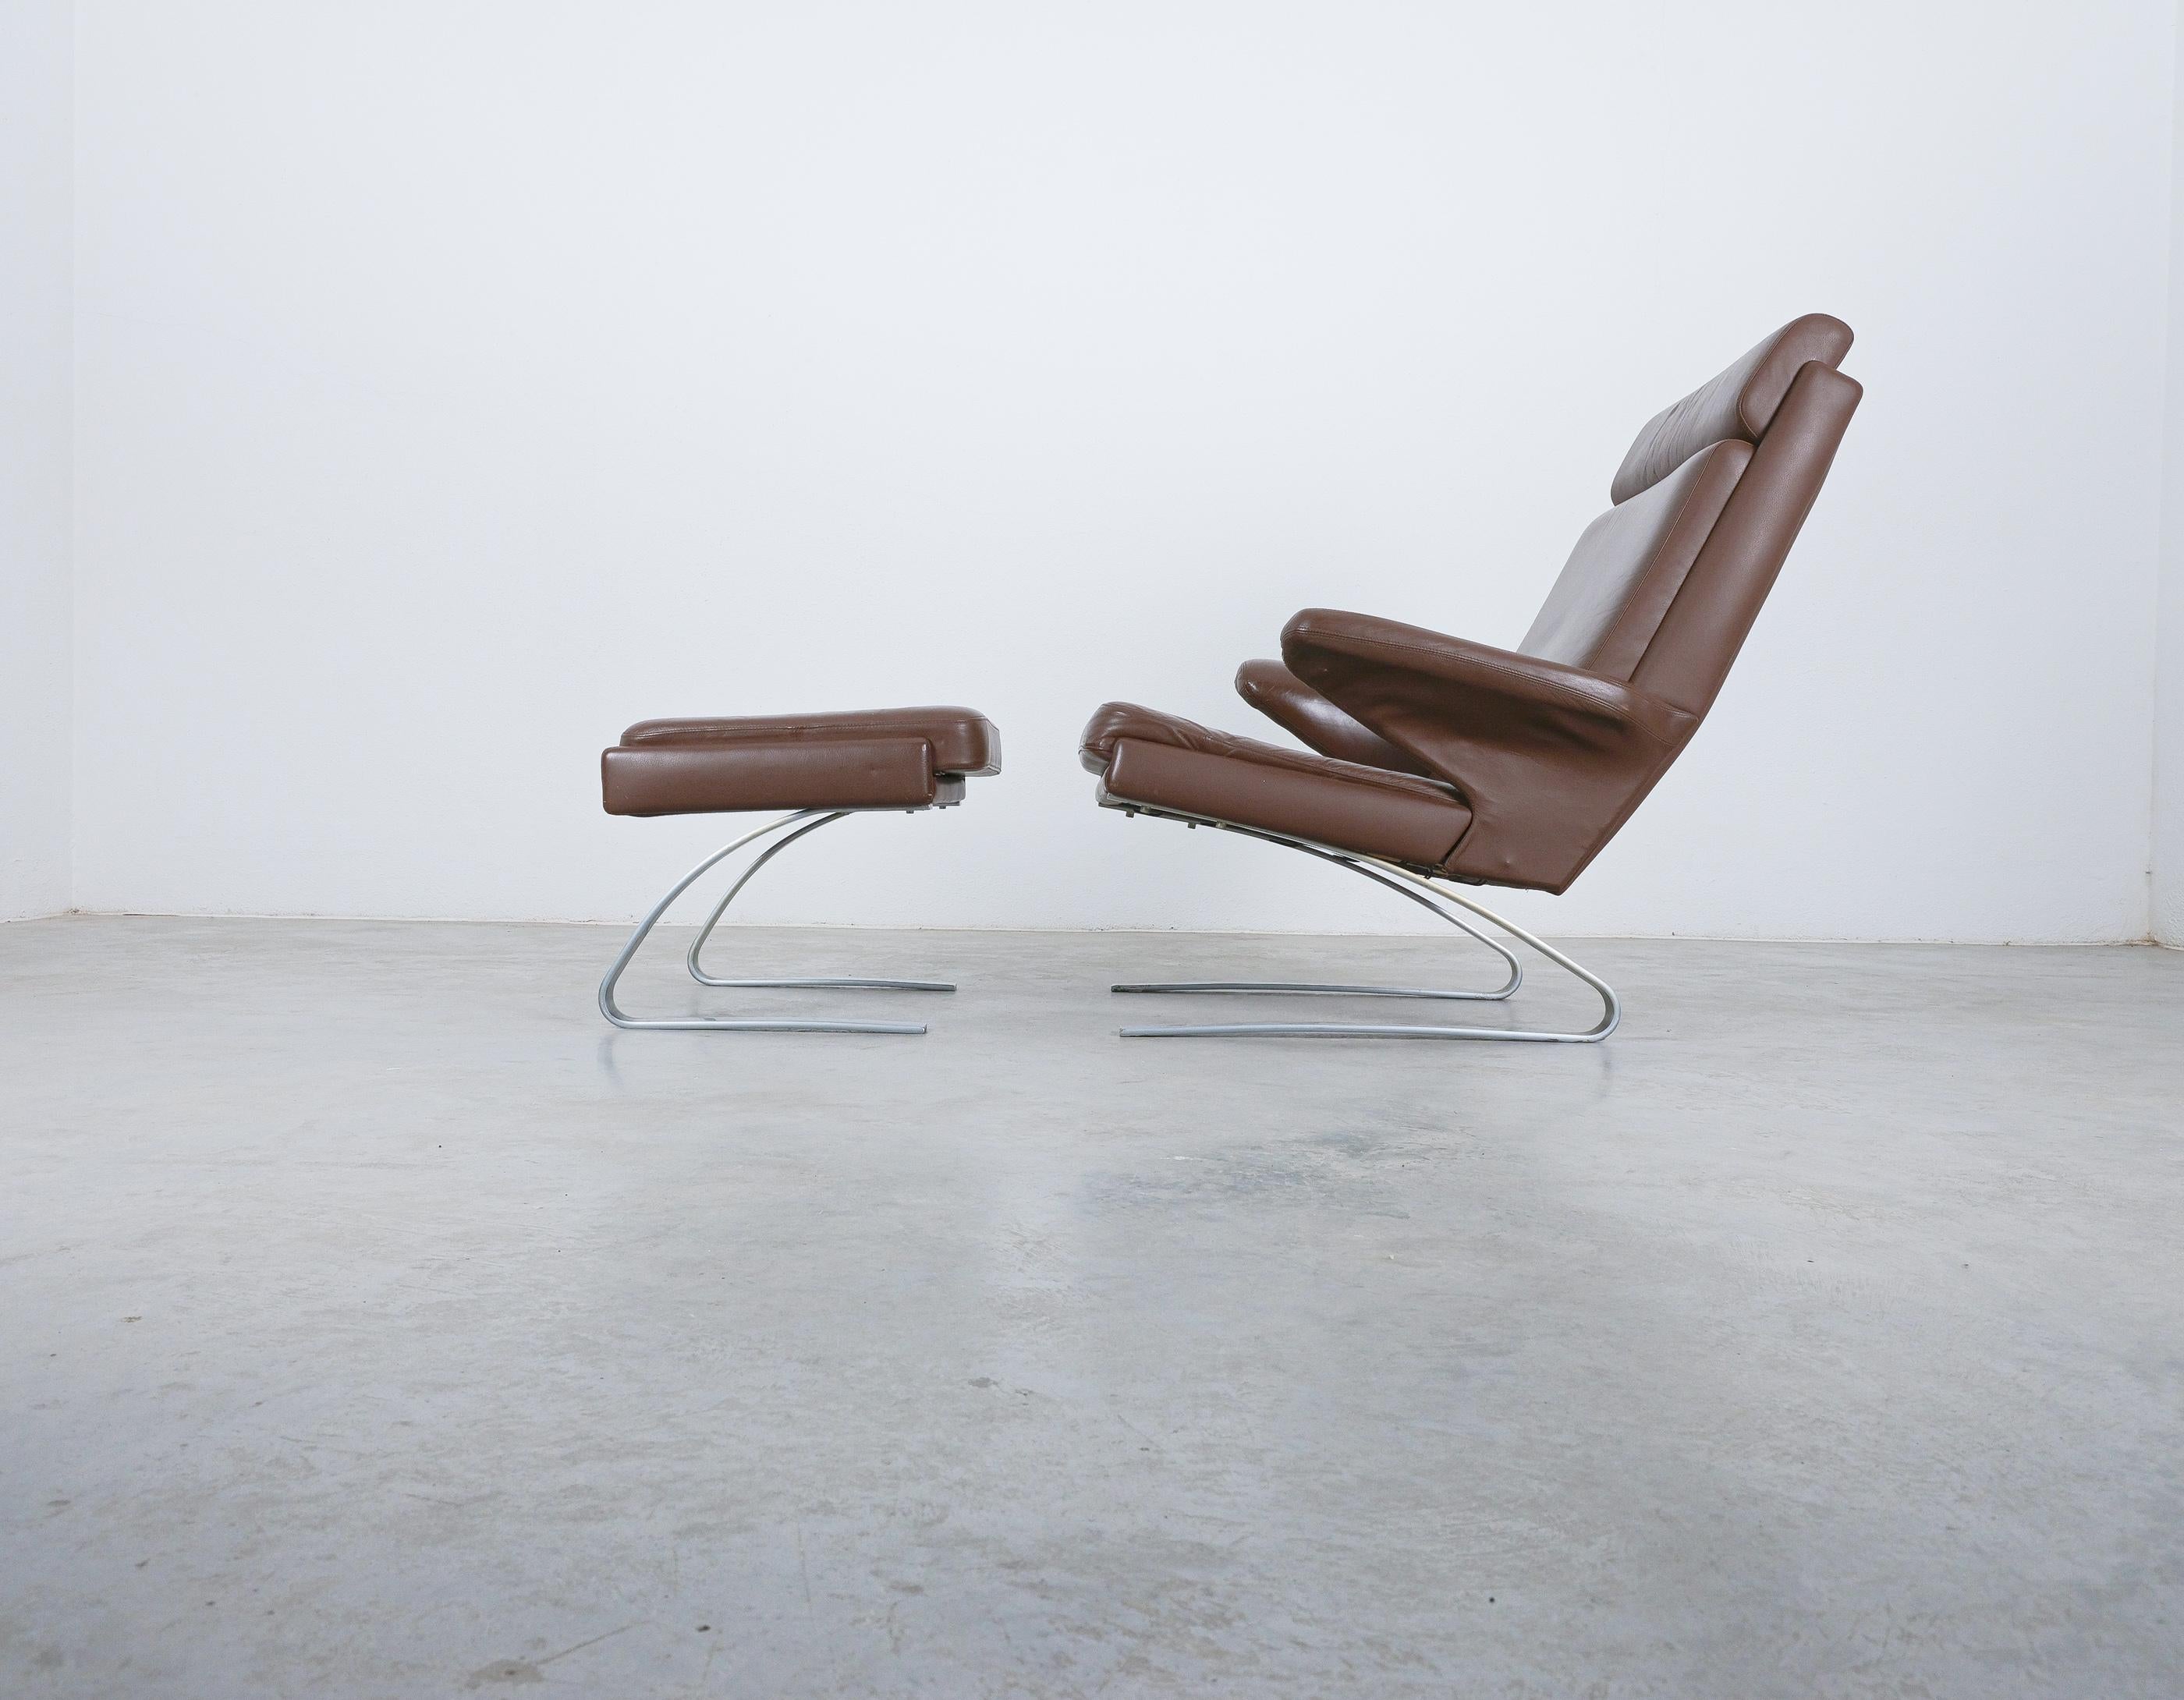 COR Swing Leather Lounge Chair von Reinhold Adolf & Hans-Jürgen Schröpfer, 1976

Original Swing Stuhl + Ottomane mit seinem originalen glatten und unbeschädigten Anilinleder. Das originale Leder dieses Stuhls ist noch sehr gut erhalten und wurde in